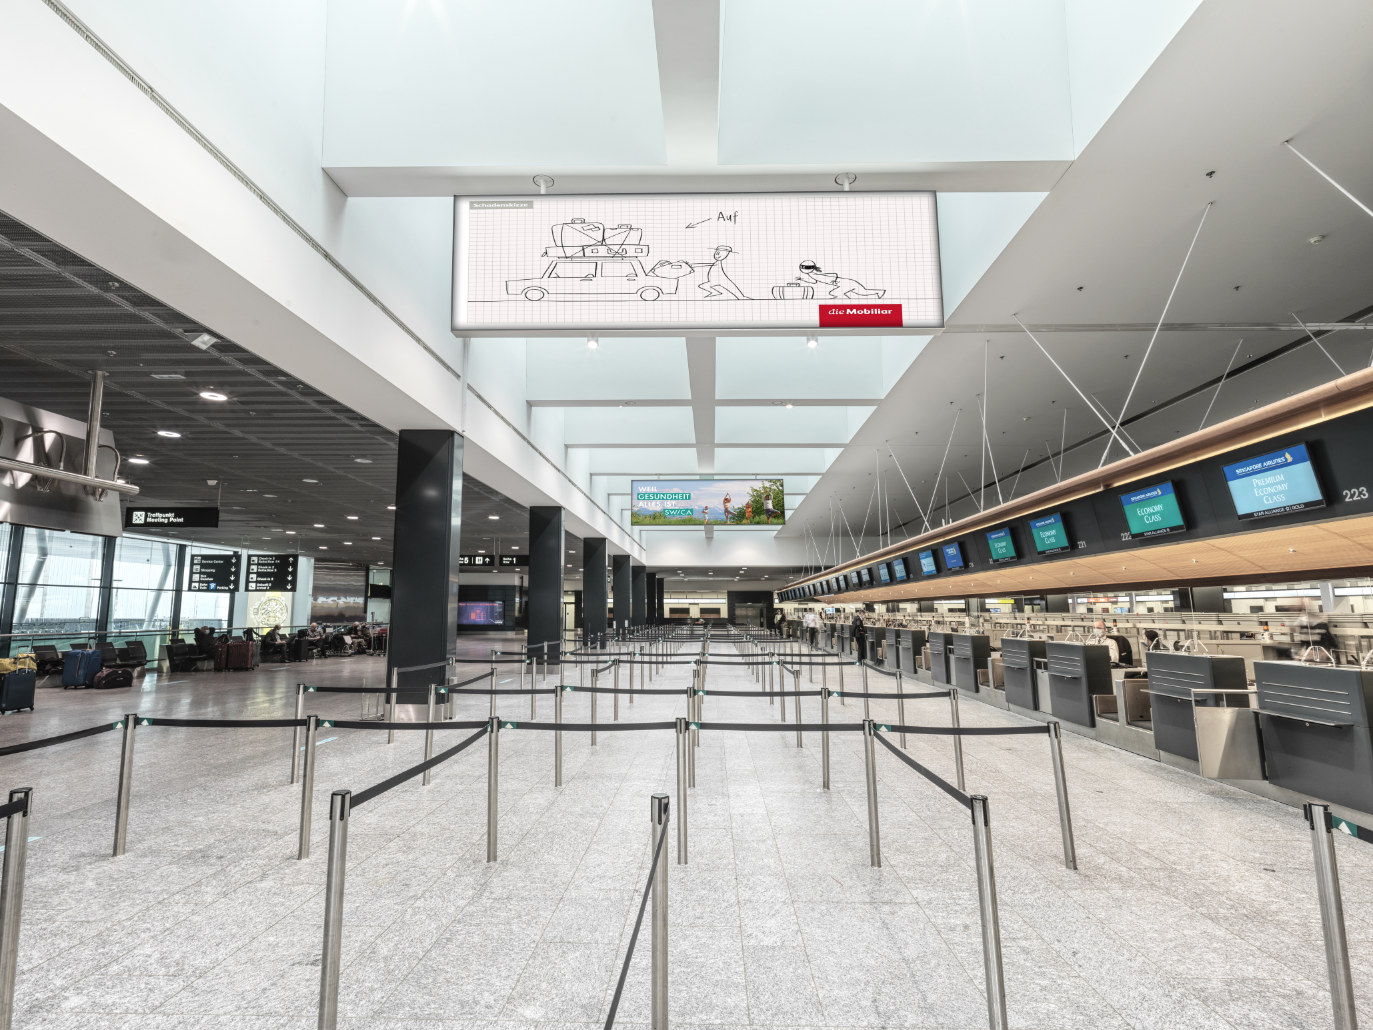 Bild einer Halle am Flughafen, welcher ein Symbolbild für Sponsoring Analyse darstellen sollte. 